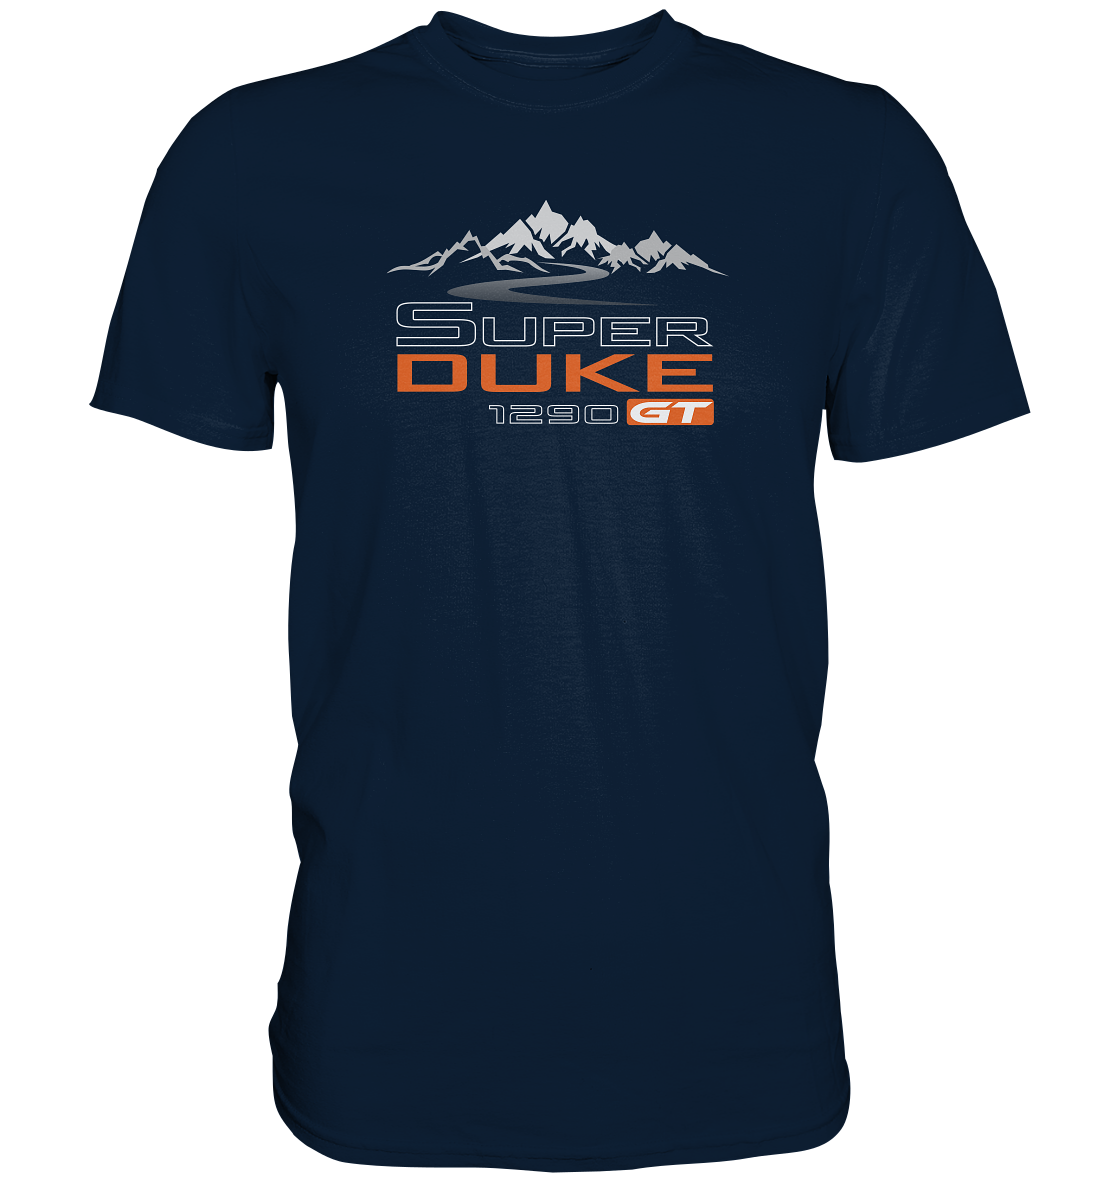 Super Duke 1290 GT Tourmotiv - Premium unisex Shirt